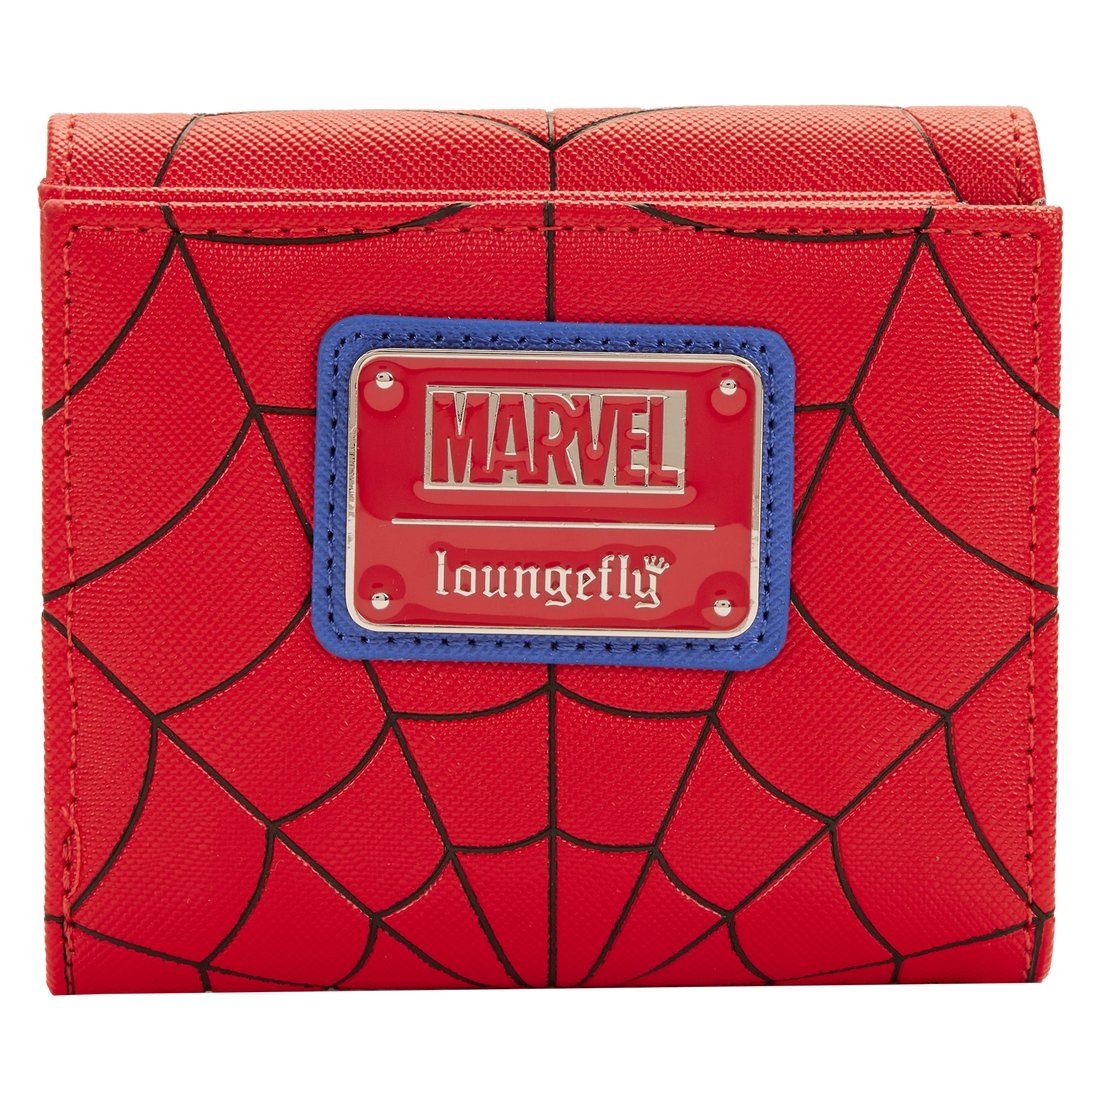 Spider Man Colourblock Wallet - Rockamilly-Bags & Purses-Vintage